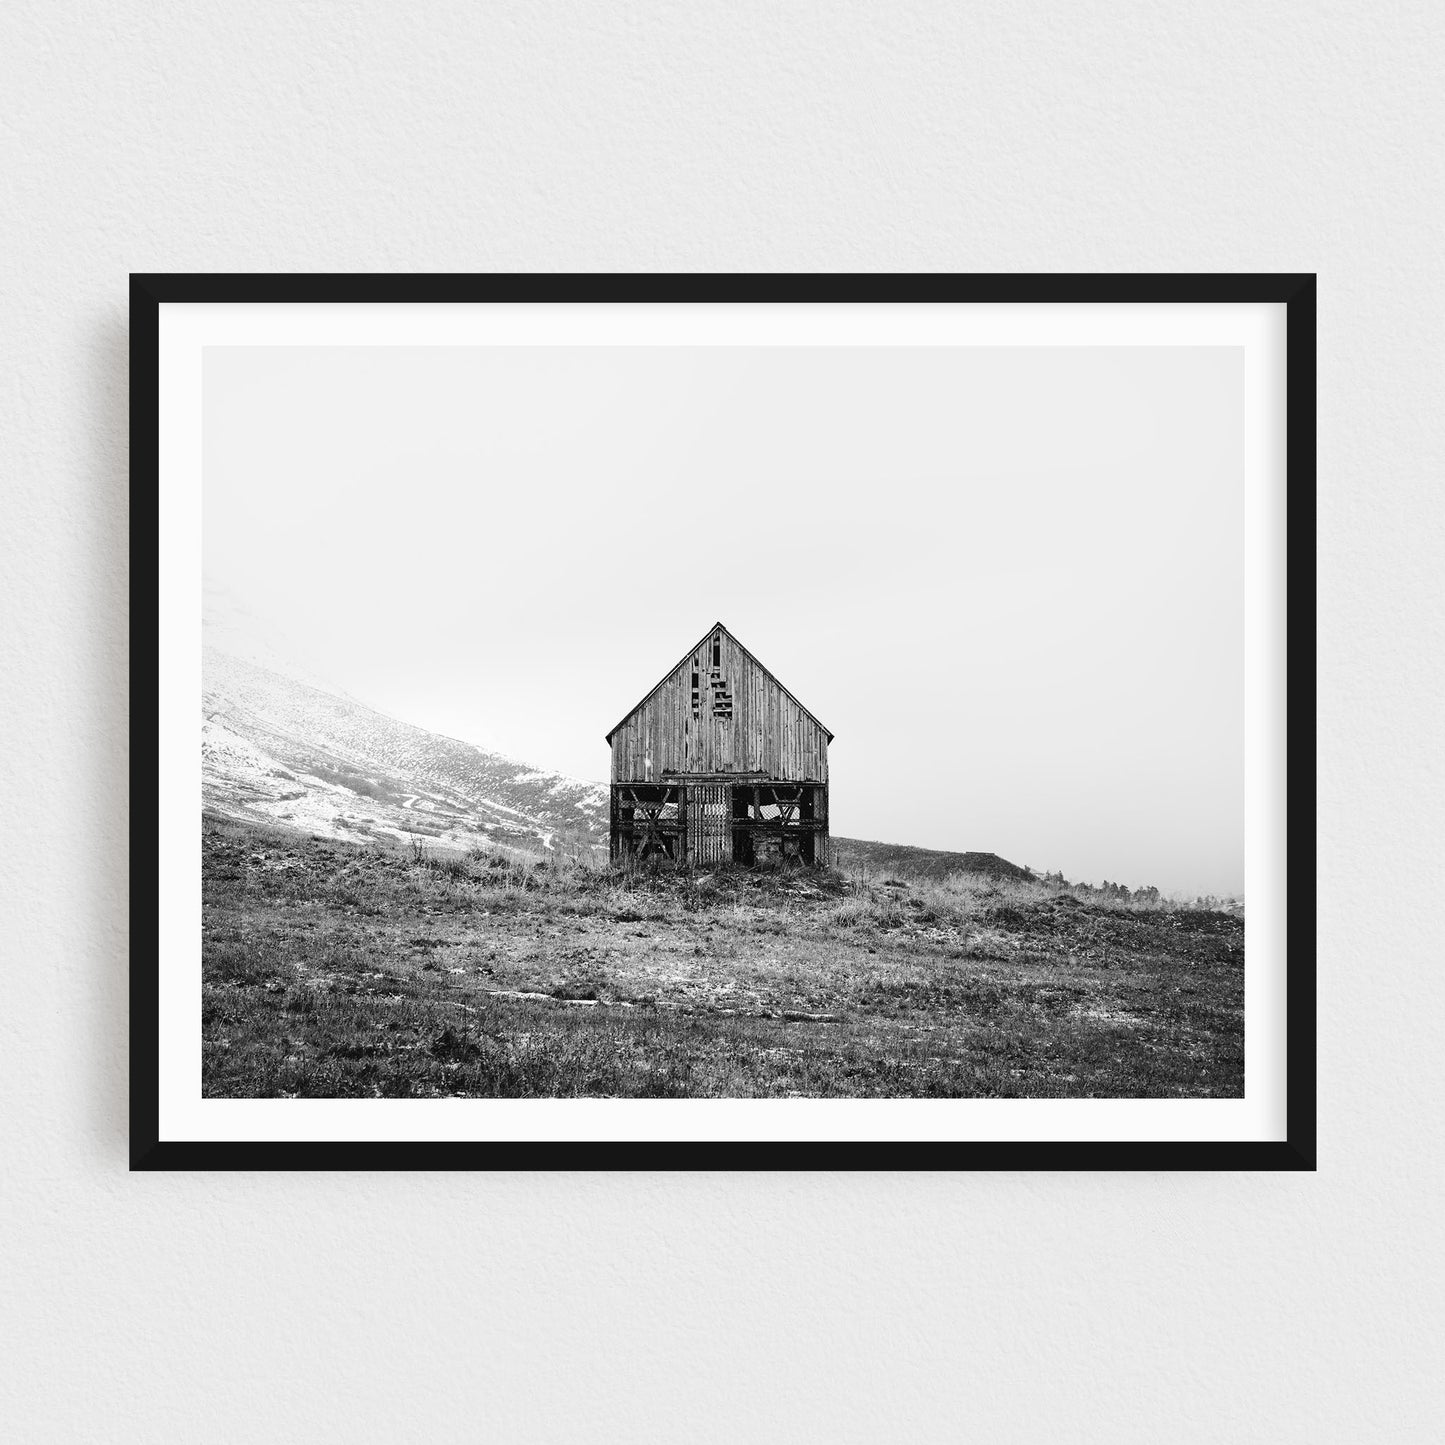 The Barn of Siglufjörður